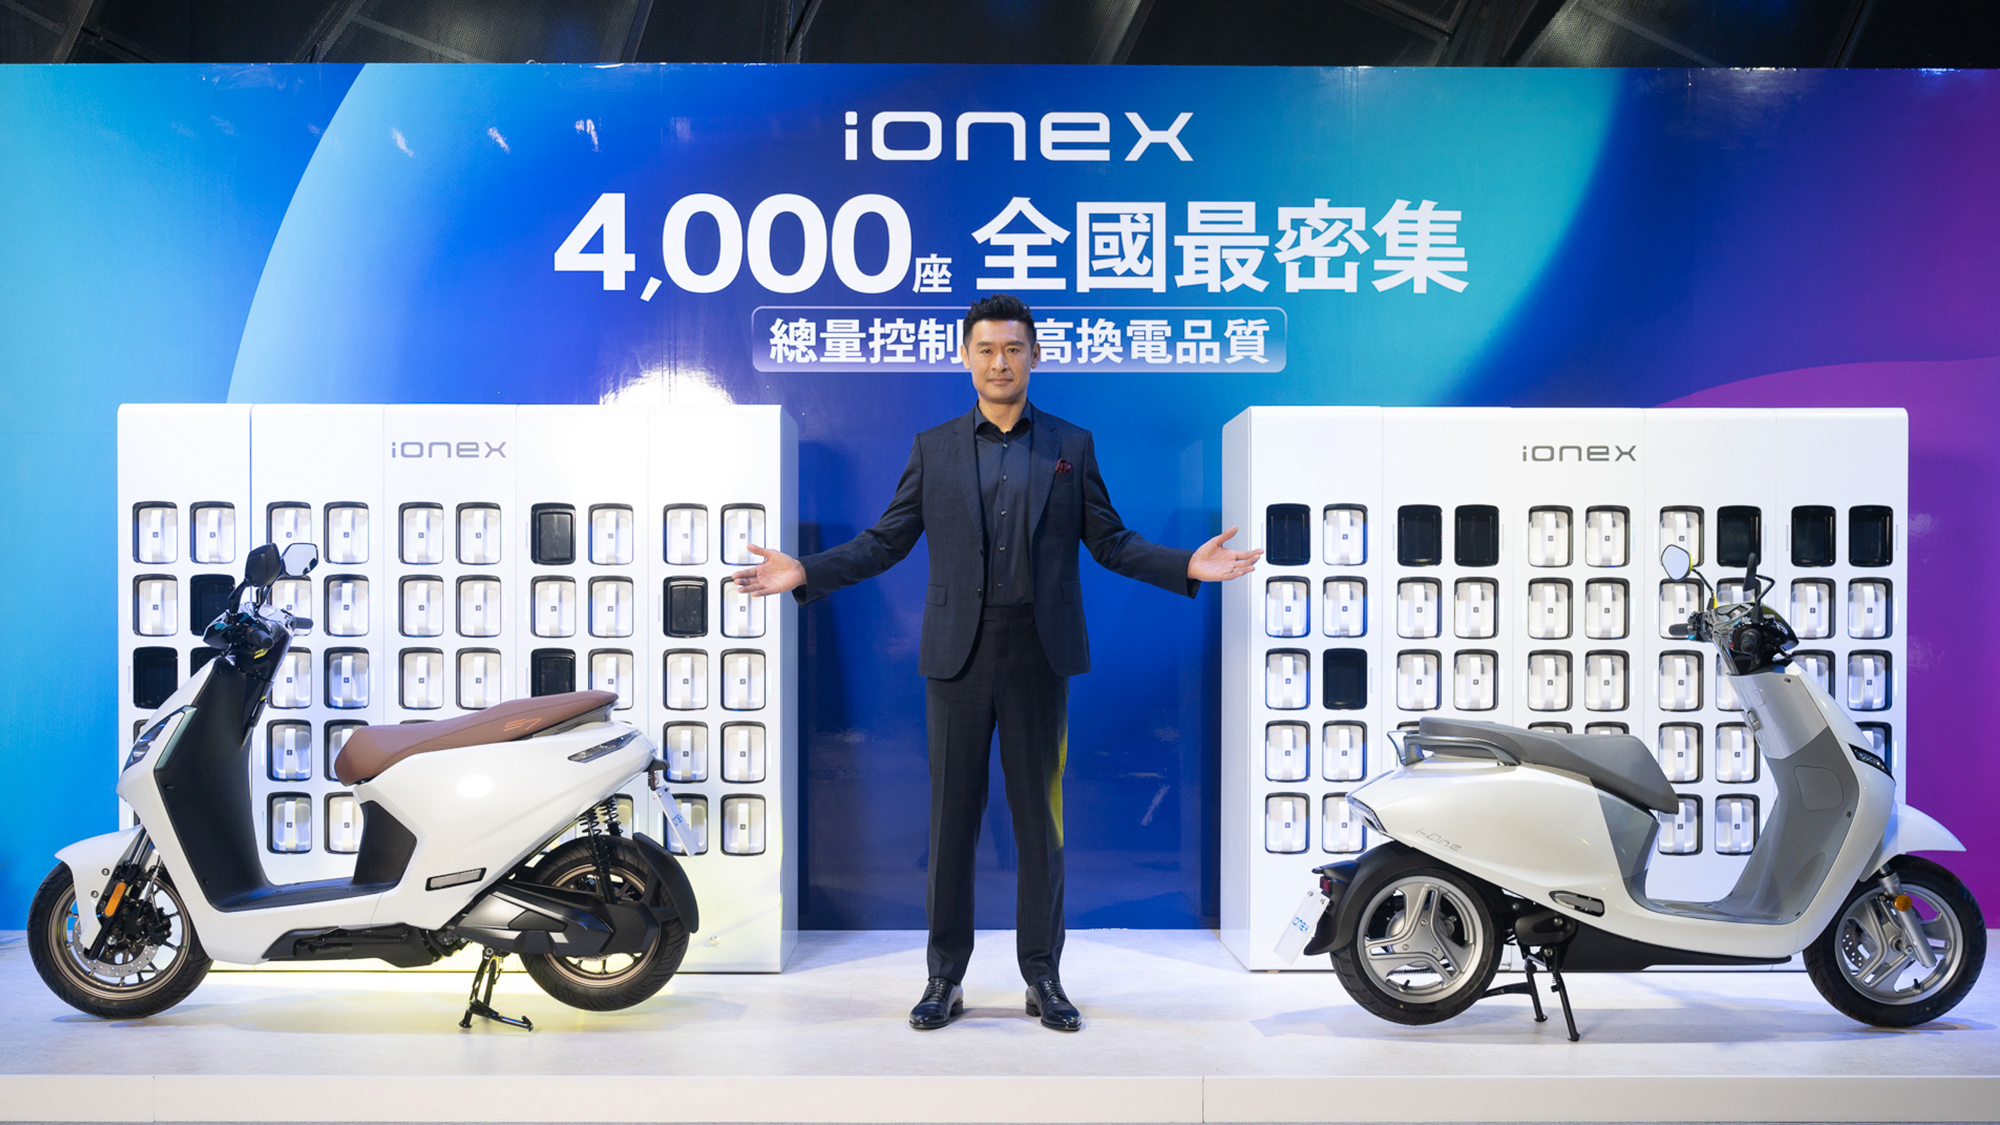 2025 年前於泰國當地 PTTOR 服務站內設置 300 個 Ionex 電池交換站，電池部分則會由母集團 PTT 利用當地電動車發展技術來負責製造。